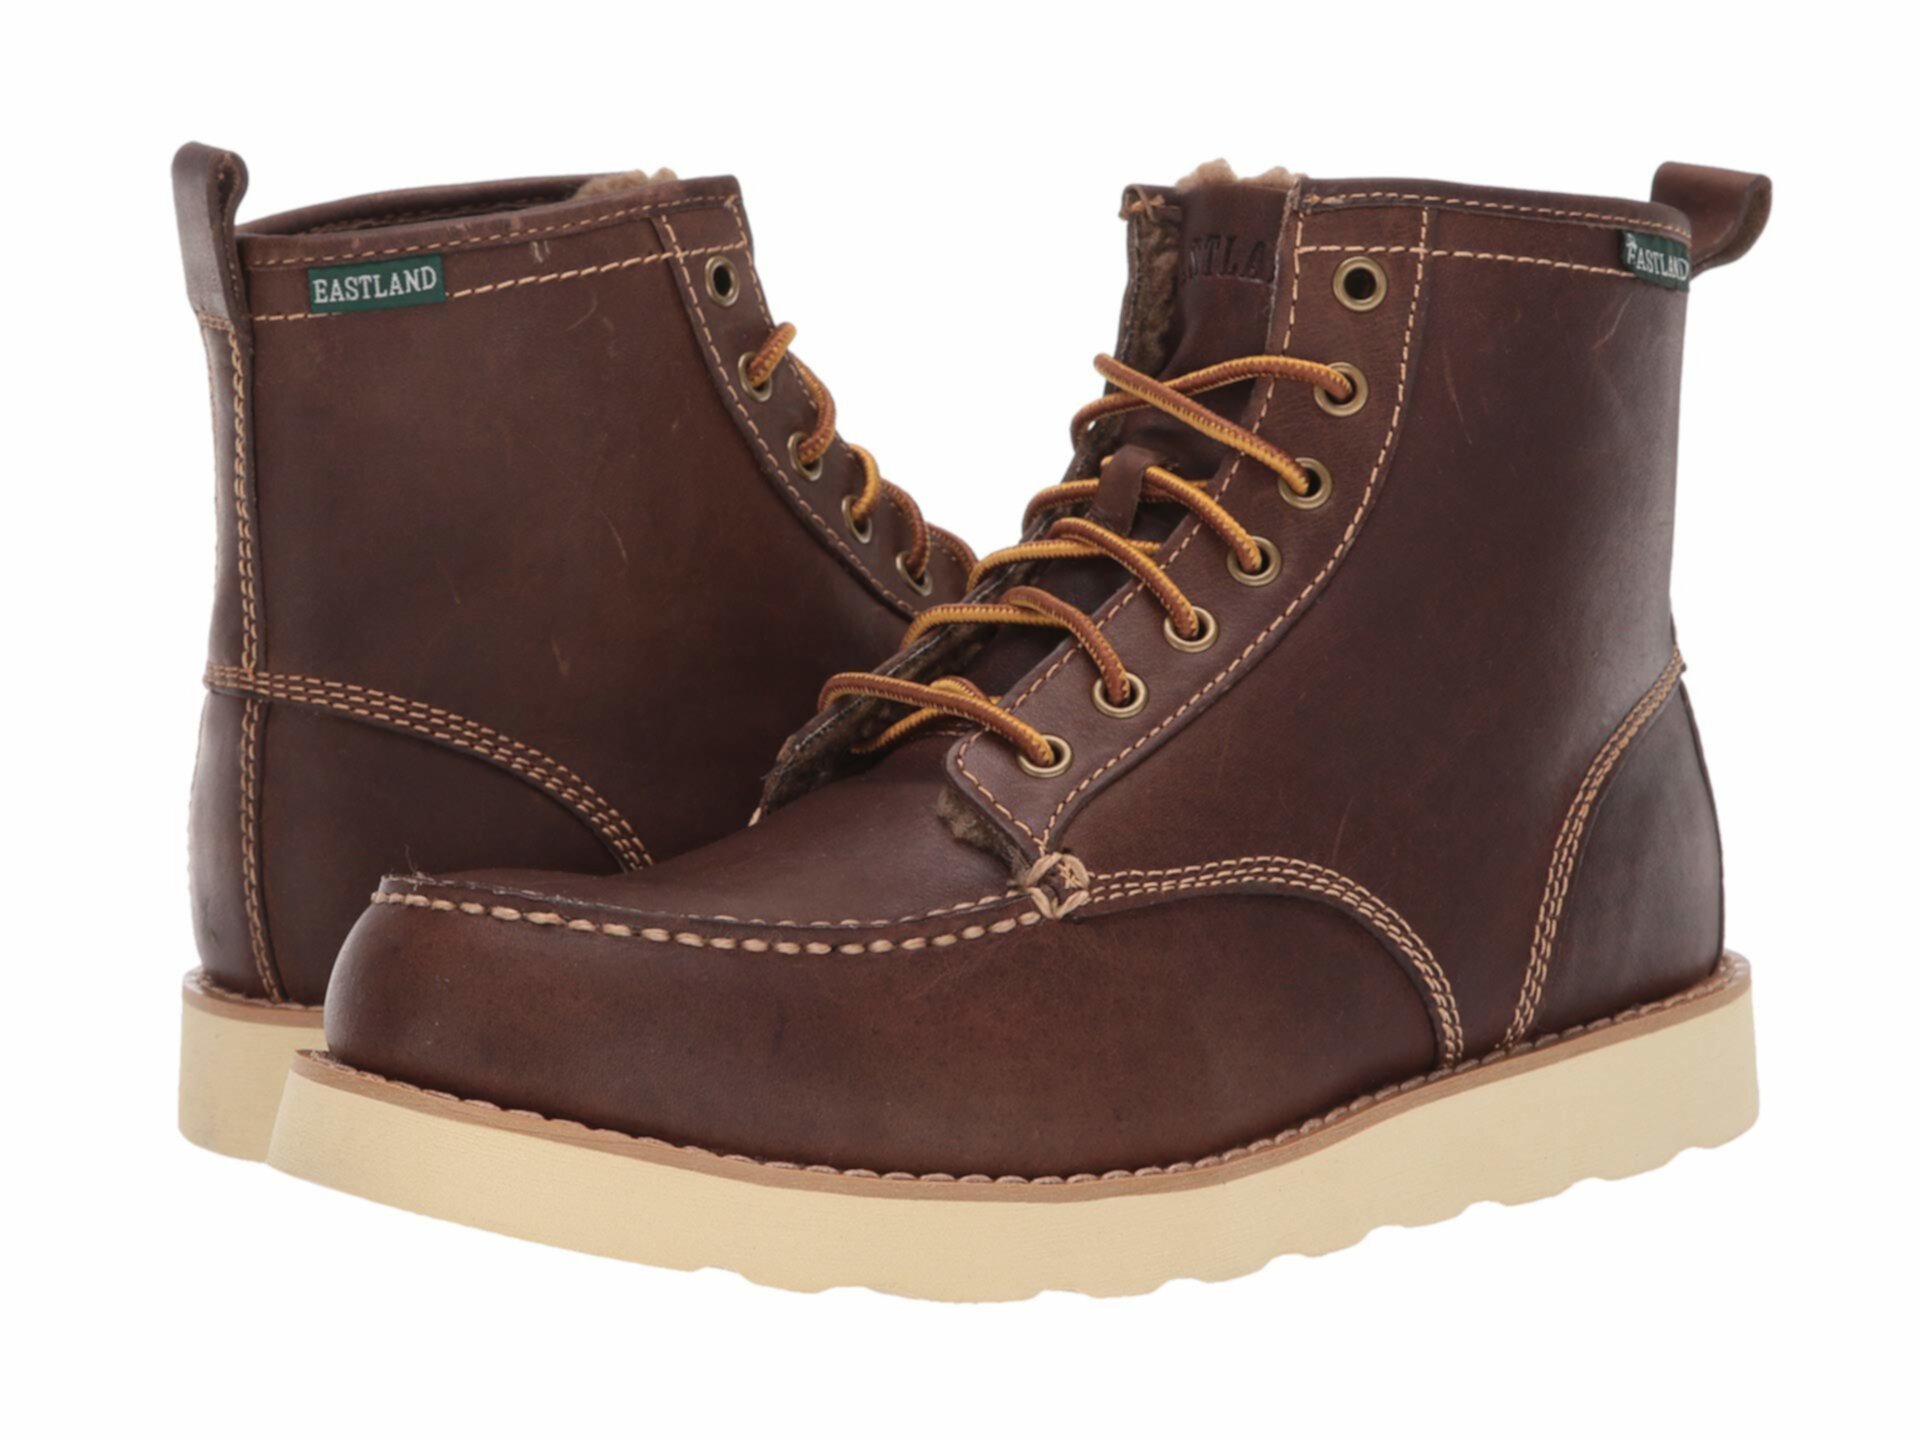 Заказать Ботинки на шнуровке Lumber Up на флисовой подкладке Eastland, цвет- коричневый, по цене 17 230 рублей на маркетплейсе Usmall.ru